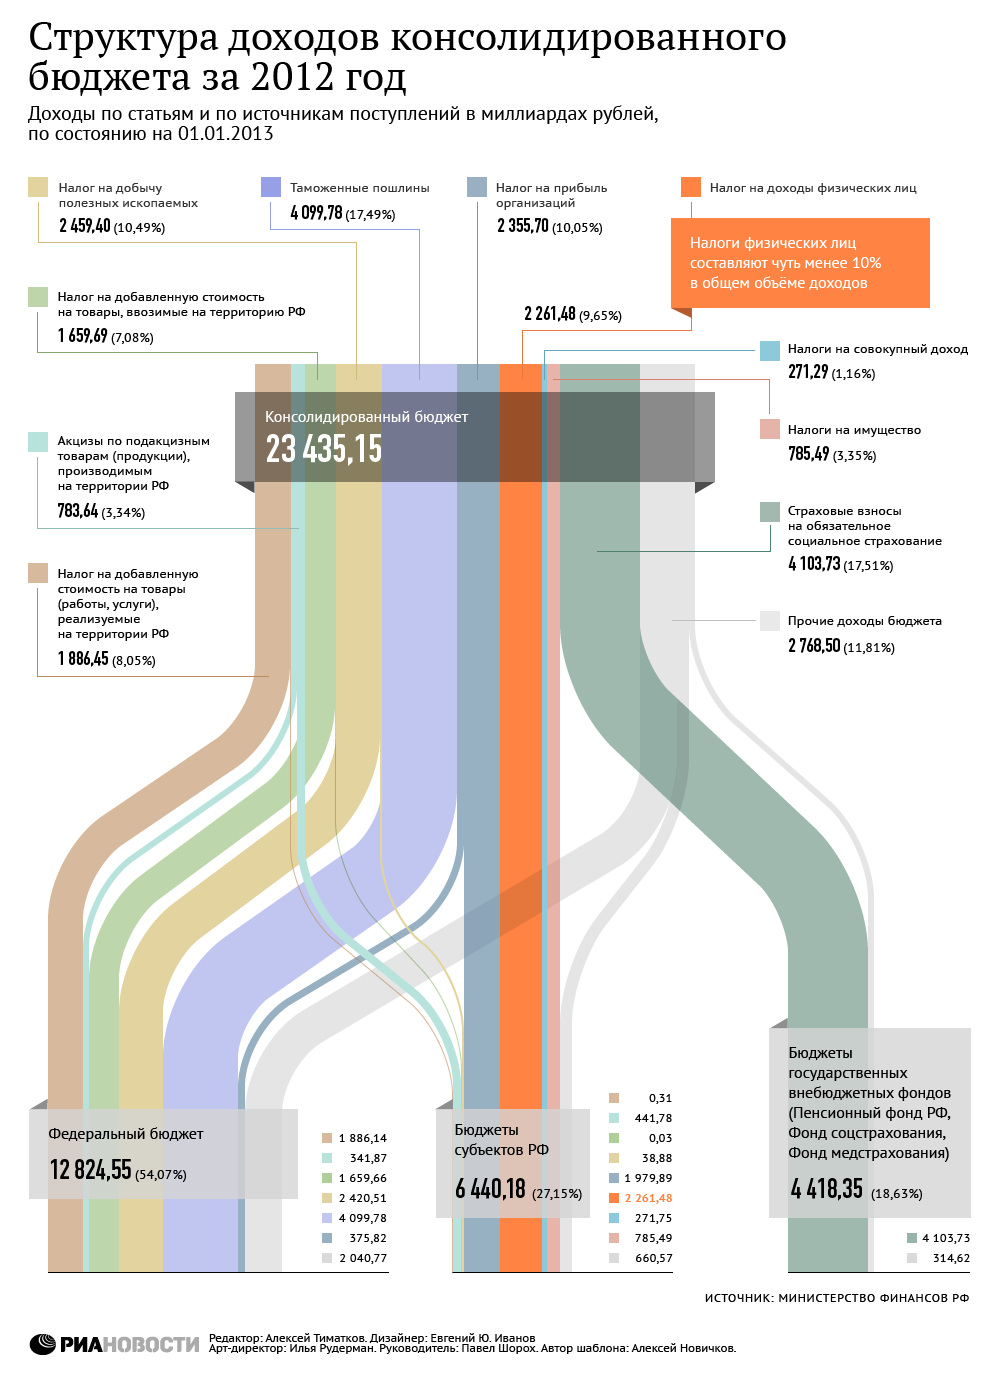 Структура доходов консолидированного бюджета РФ за 2012 год